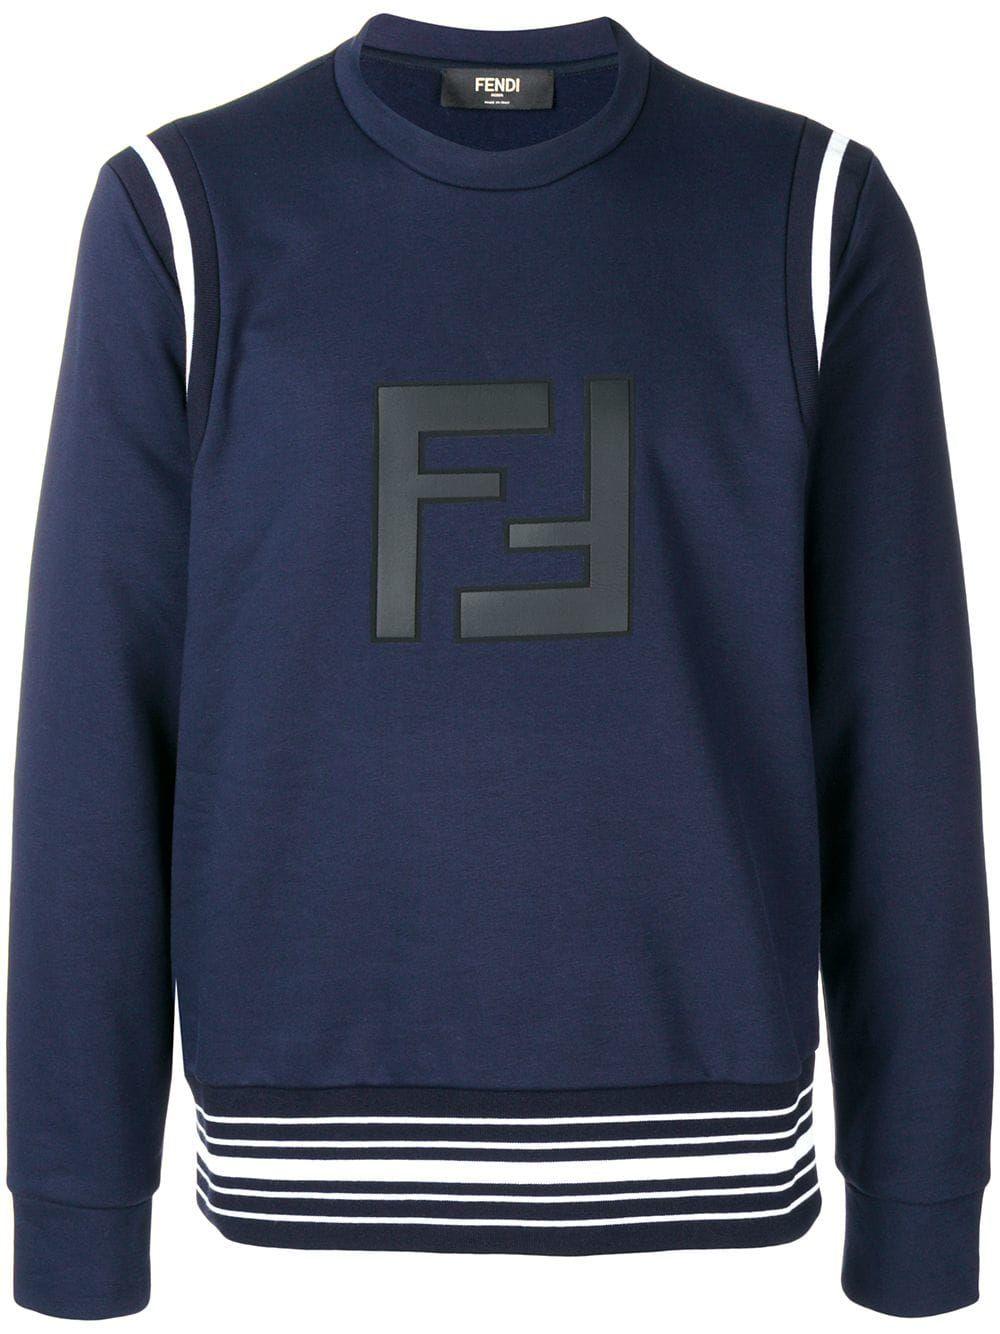 Blue Fendi Logo - FENDI FENDI FF LOGO SWEATSHIRT - BLUE. #fendi #cloth | Fendi in 2019 ...